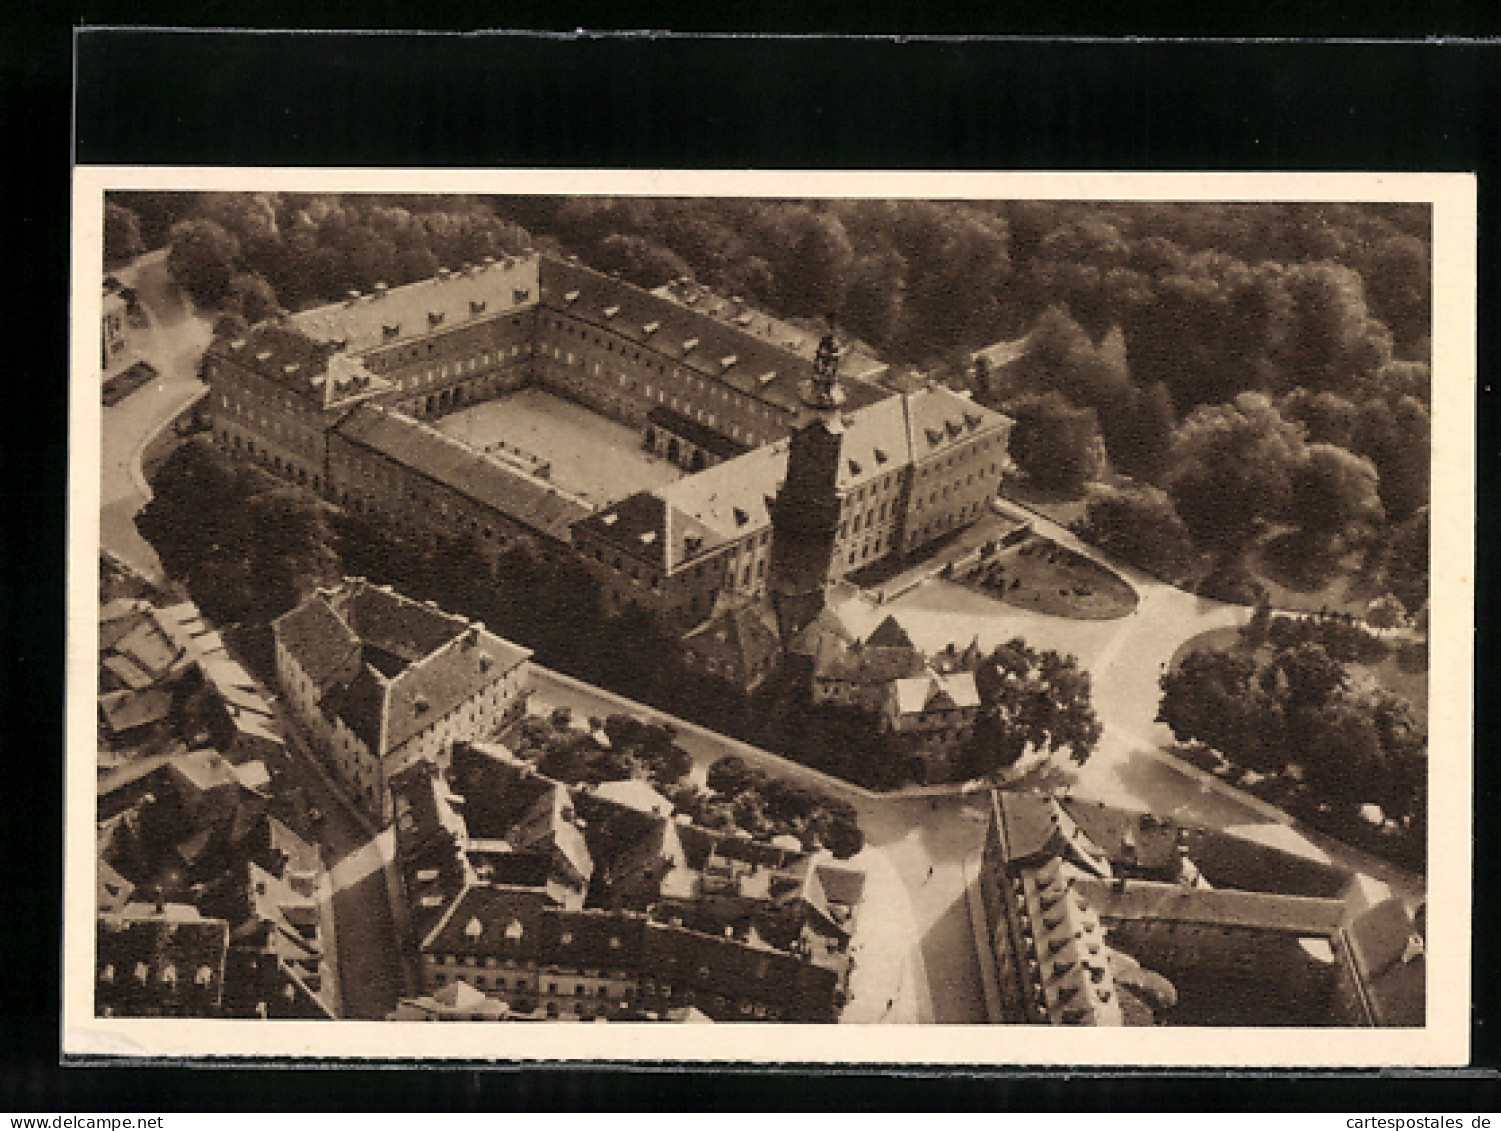 AK Das Schöne Deutschland, Bild 156: Weimar, Schloss, Luftbild, Ganzsache WHW Winterhilfswerk  - Cartes Postales